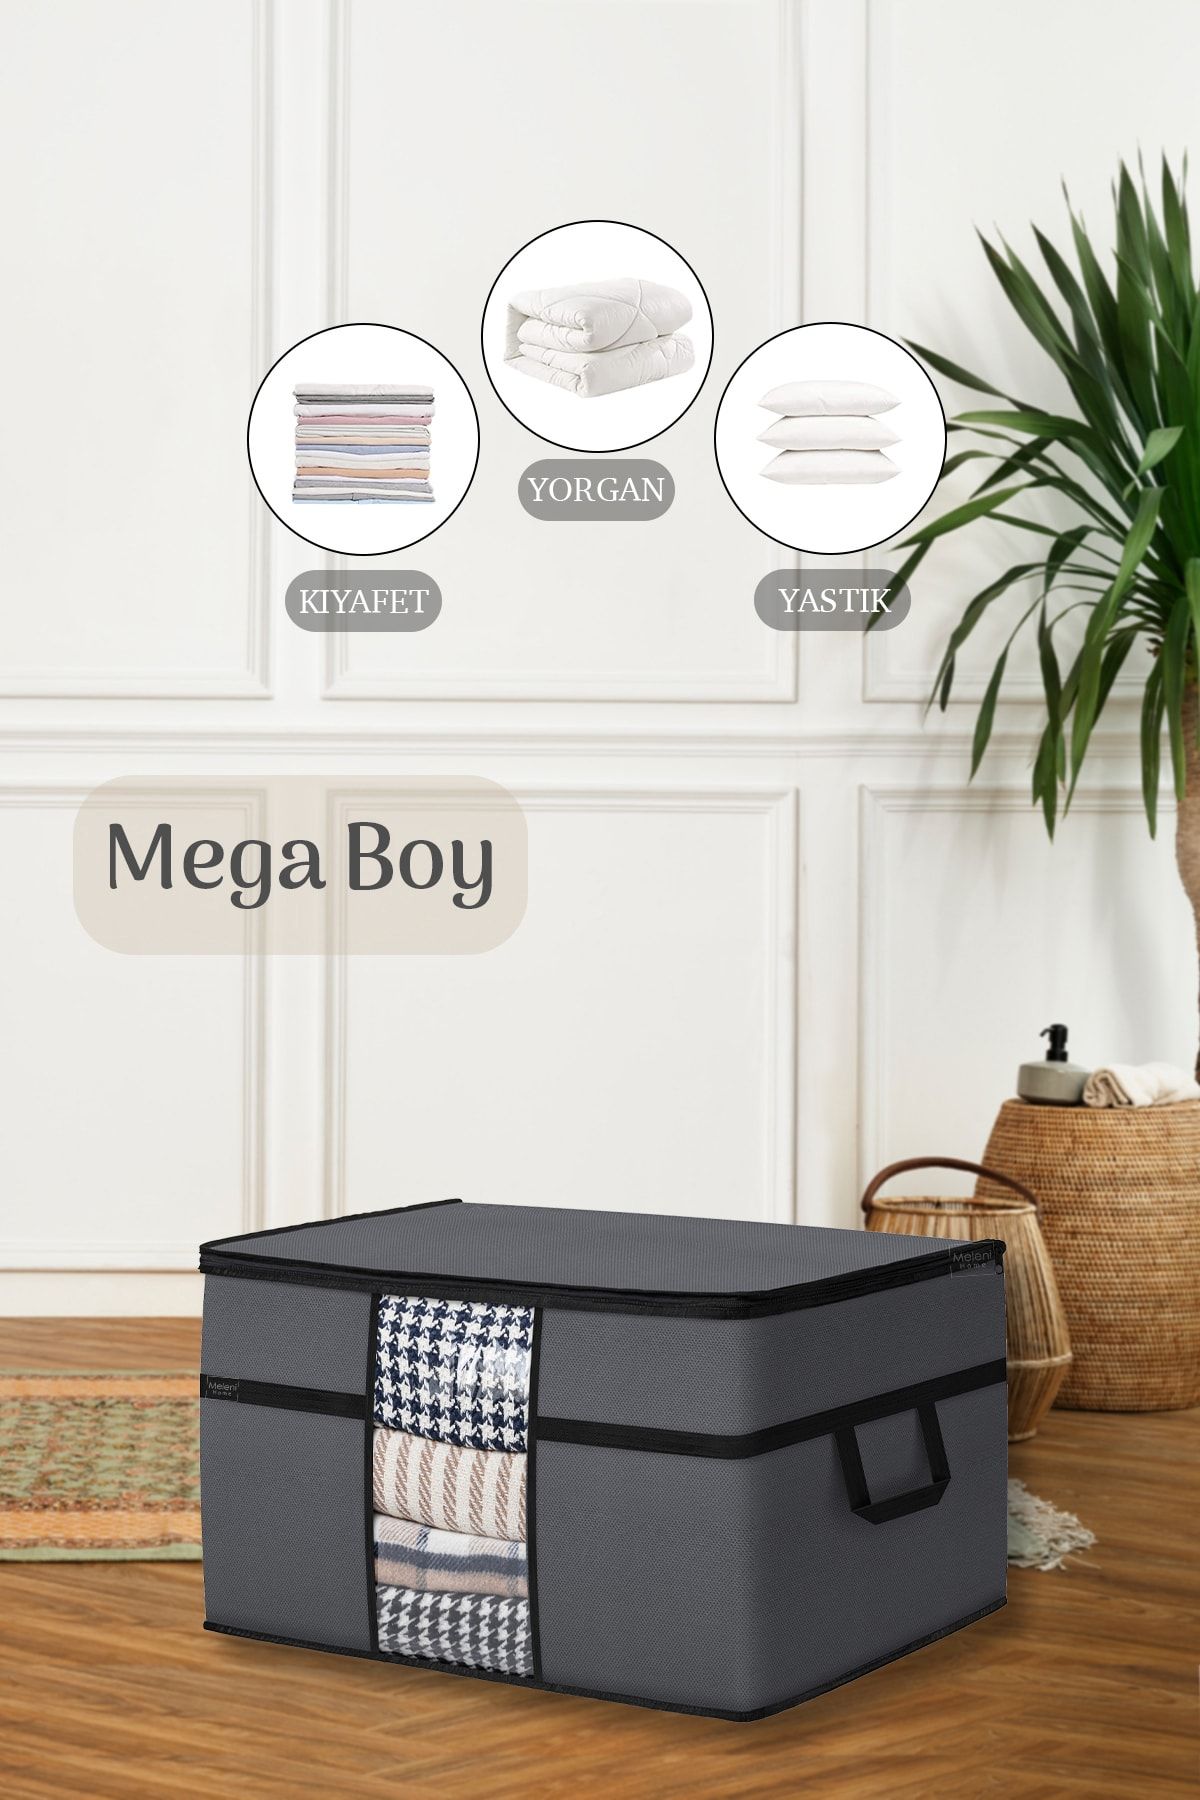 Meleni Home Mega Boy Yorgan Hurcu - Pencereli Yastık Yorgan Saklama Hurcu 70 X 40 X 40 Cm Antrasit